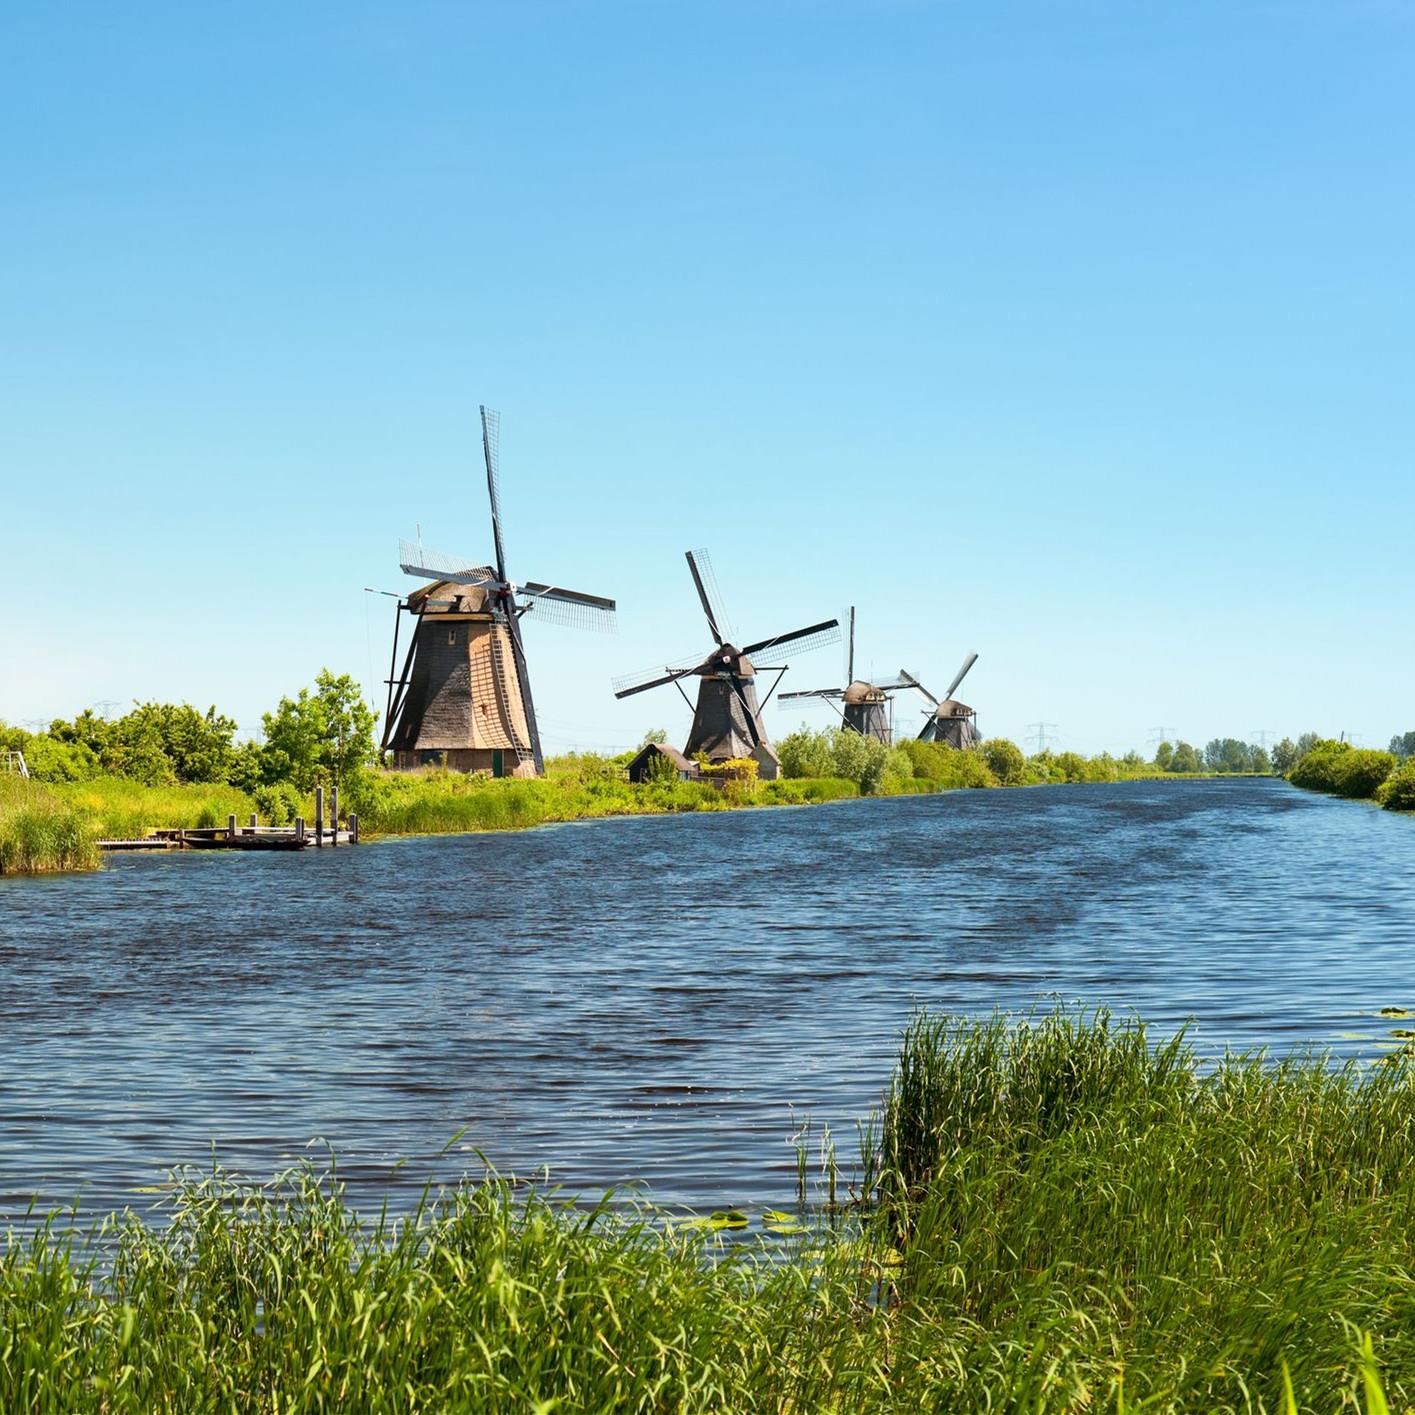 荷兰留学几处荷兰著名的景点介绍 - 国外旅游 - 立思辰留学